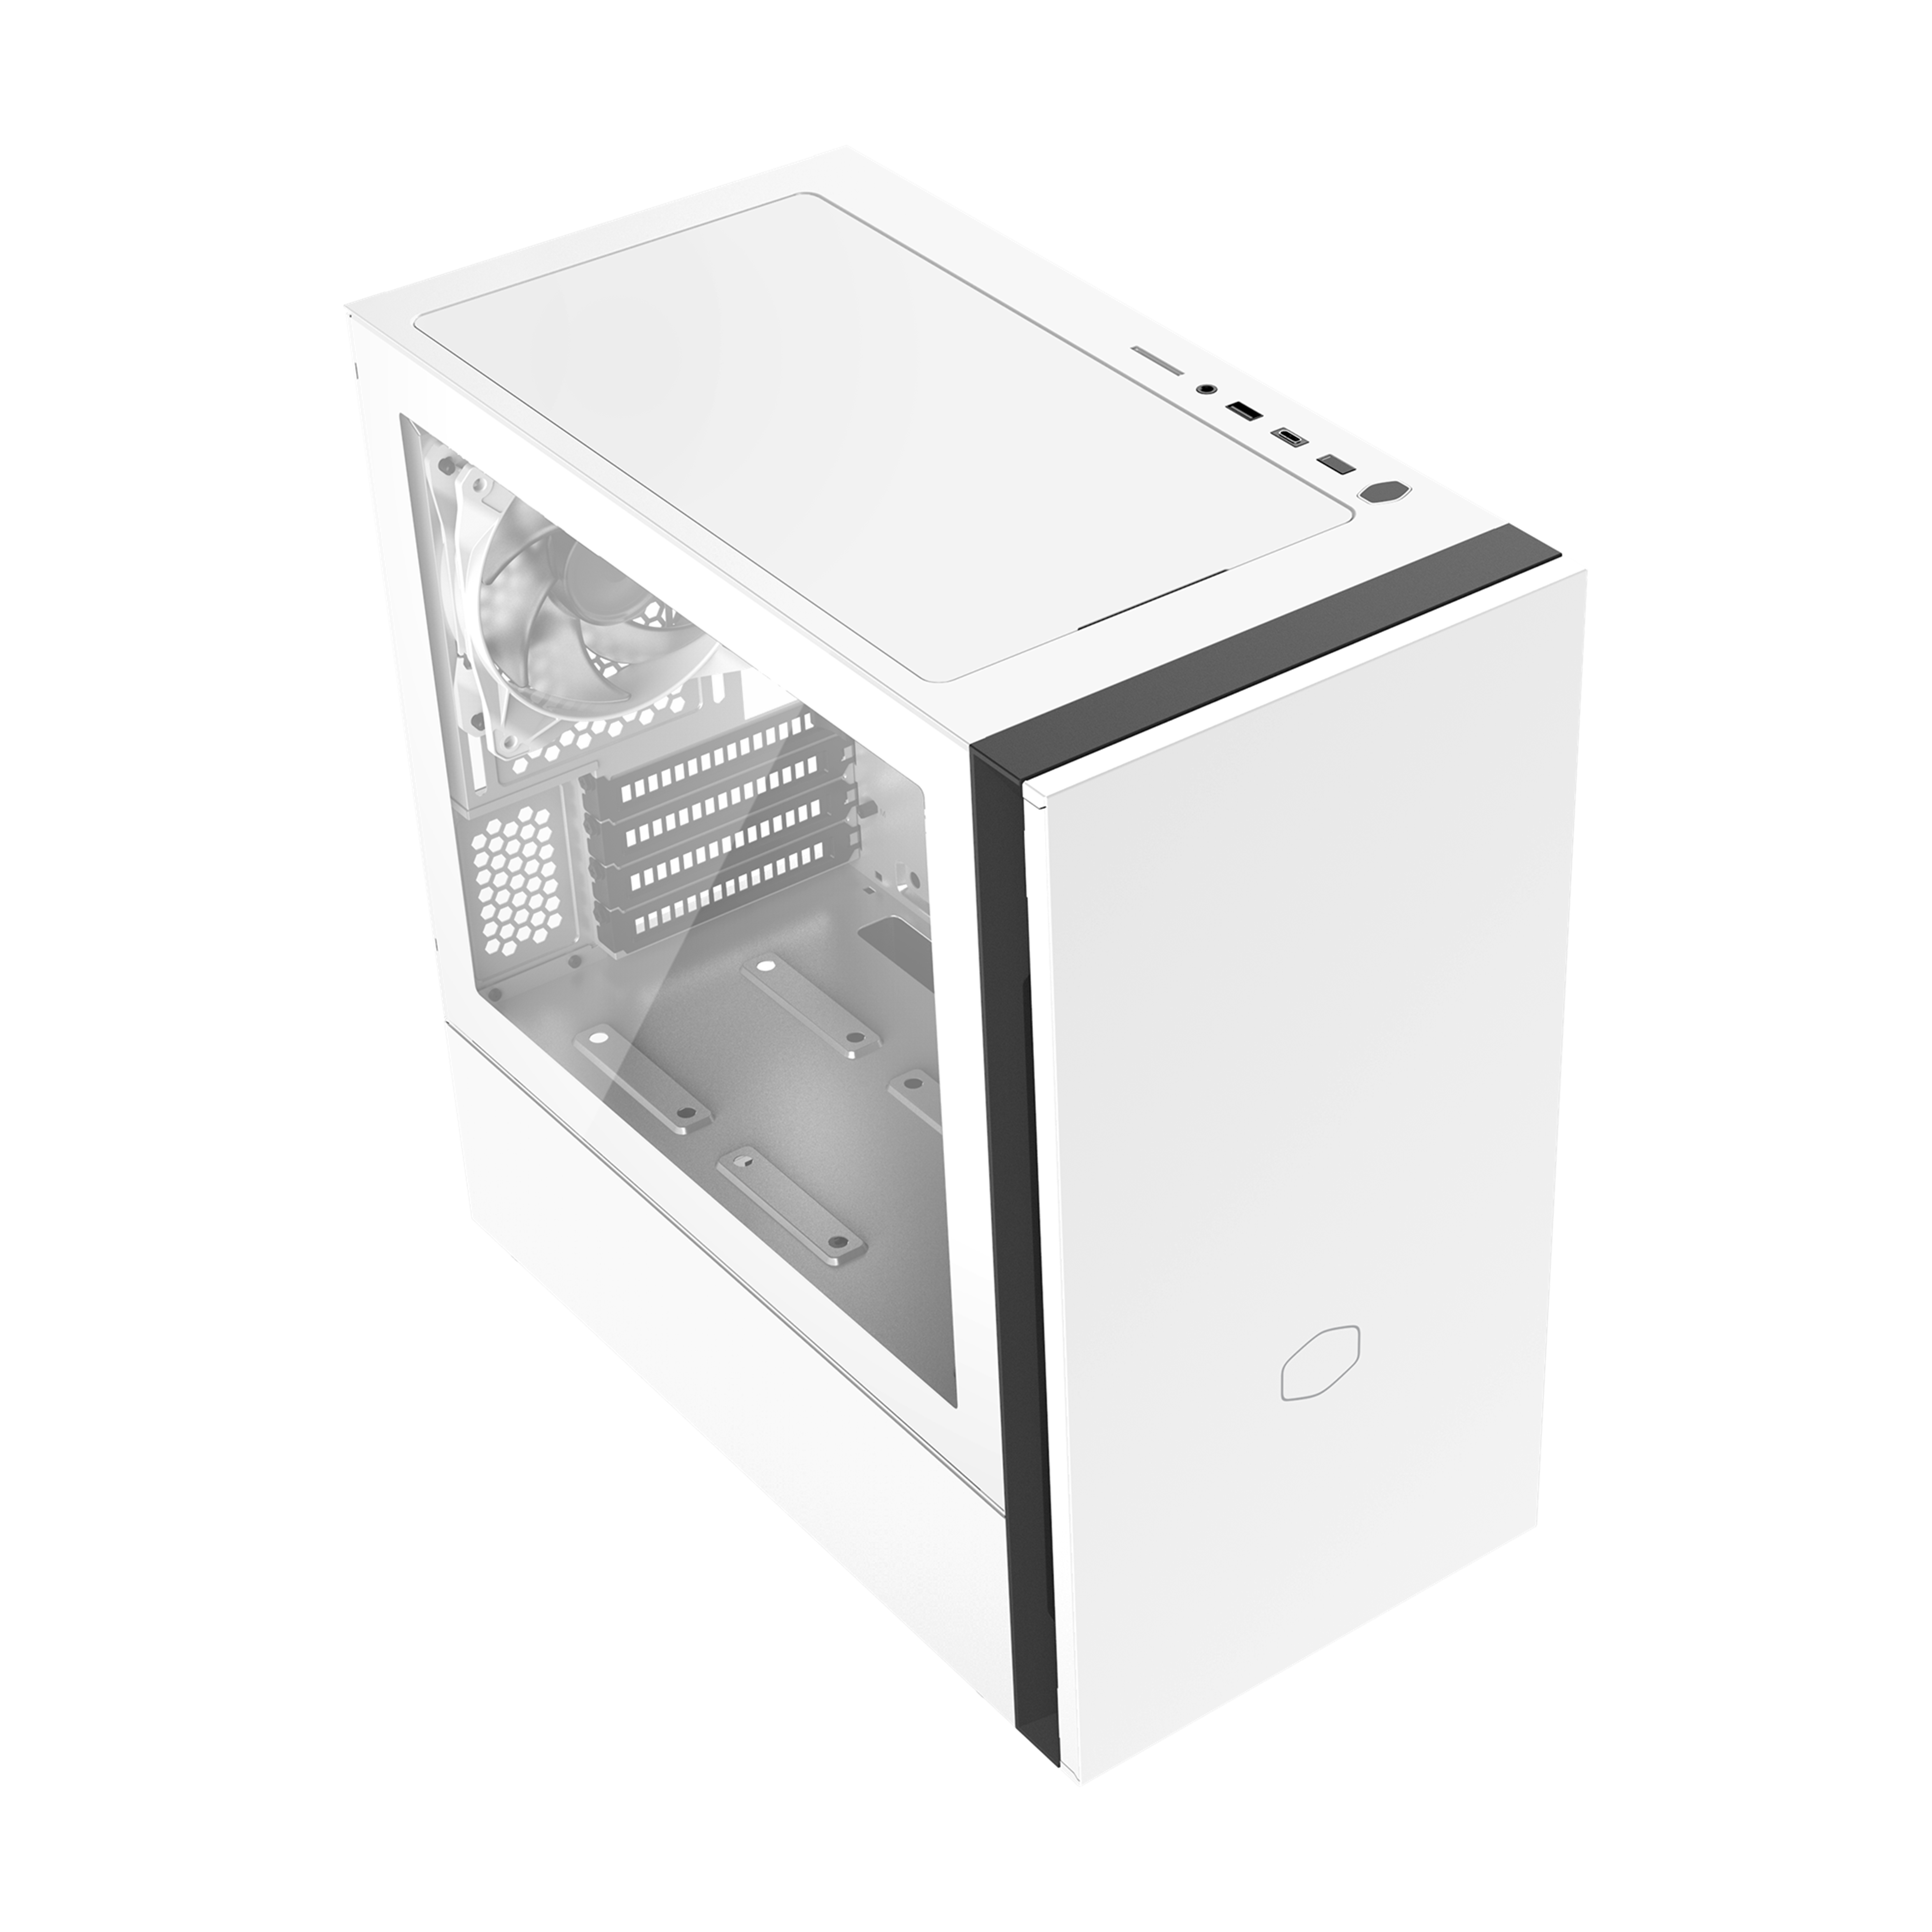 Silencio S400 White Mini Tower PC Case | Cooler Master 日本